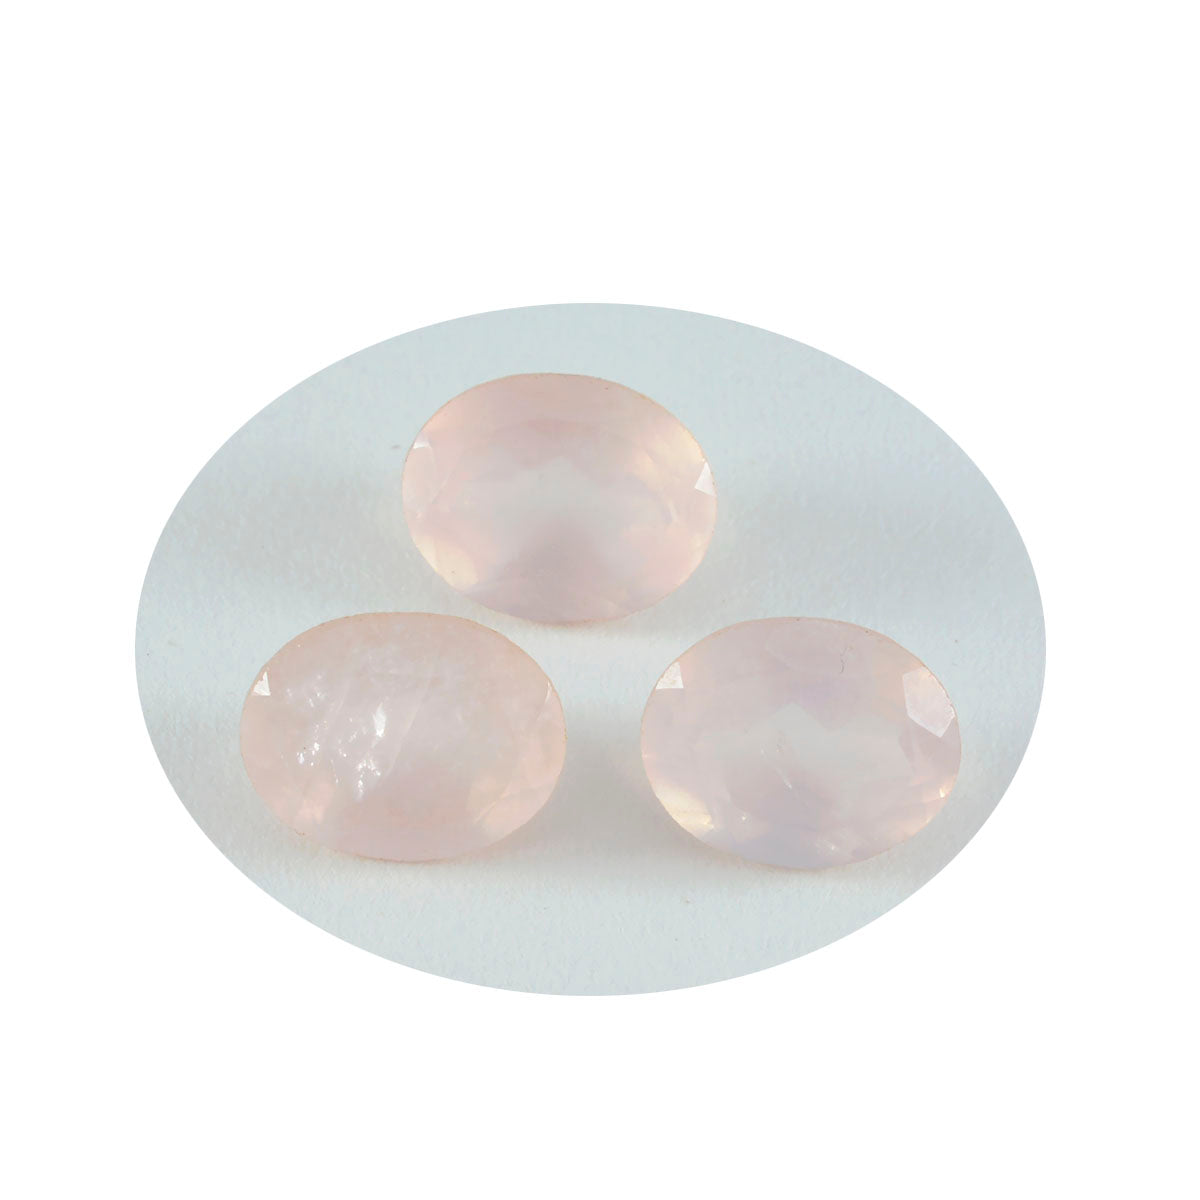 riyogems 1шт розовый кварц ограненный 12x16 мм овальная форма поразительного качества свободный драгоценный камень